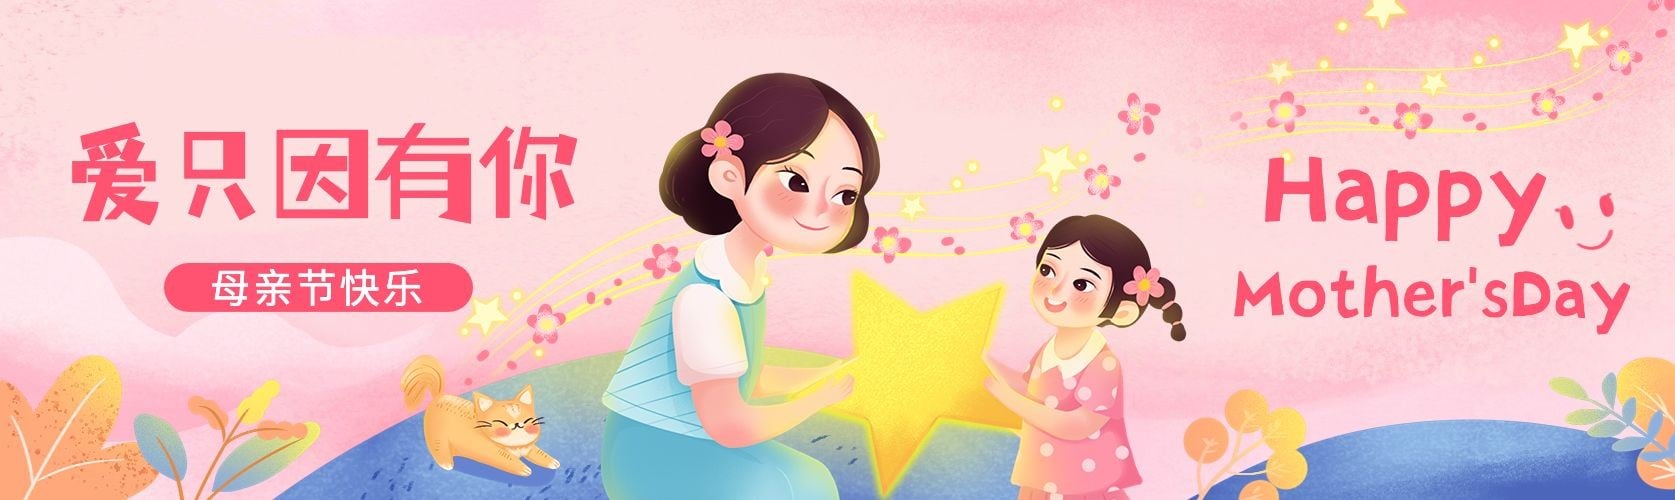 母亲节节日祝福手绘插画公众号首次图